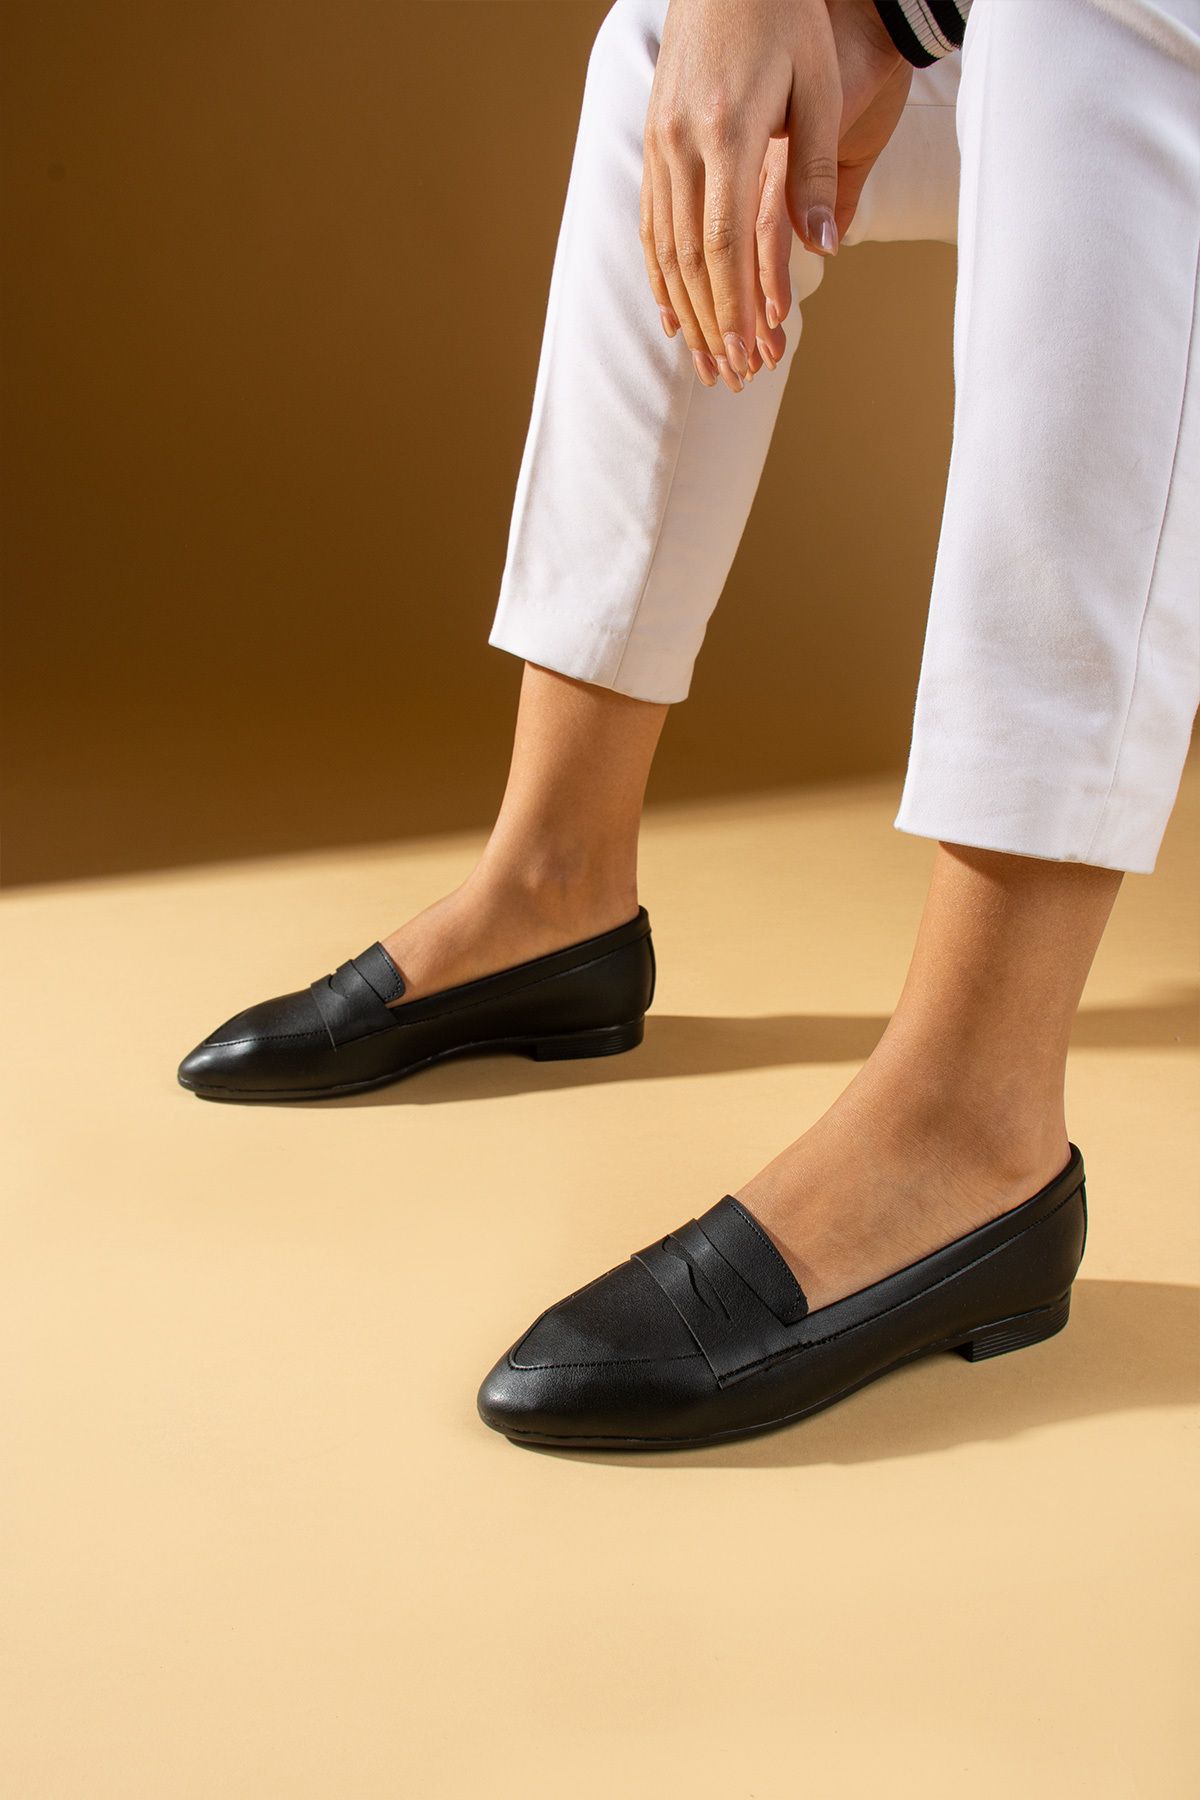 Pembe Potin Kadın Babet Siyah Loafer Hafif Rahat Taban Şık Günlük Ayakkabı